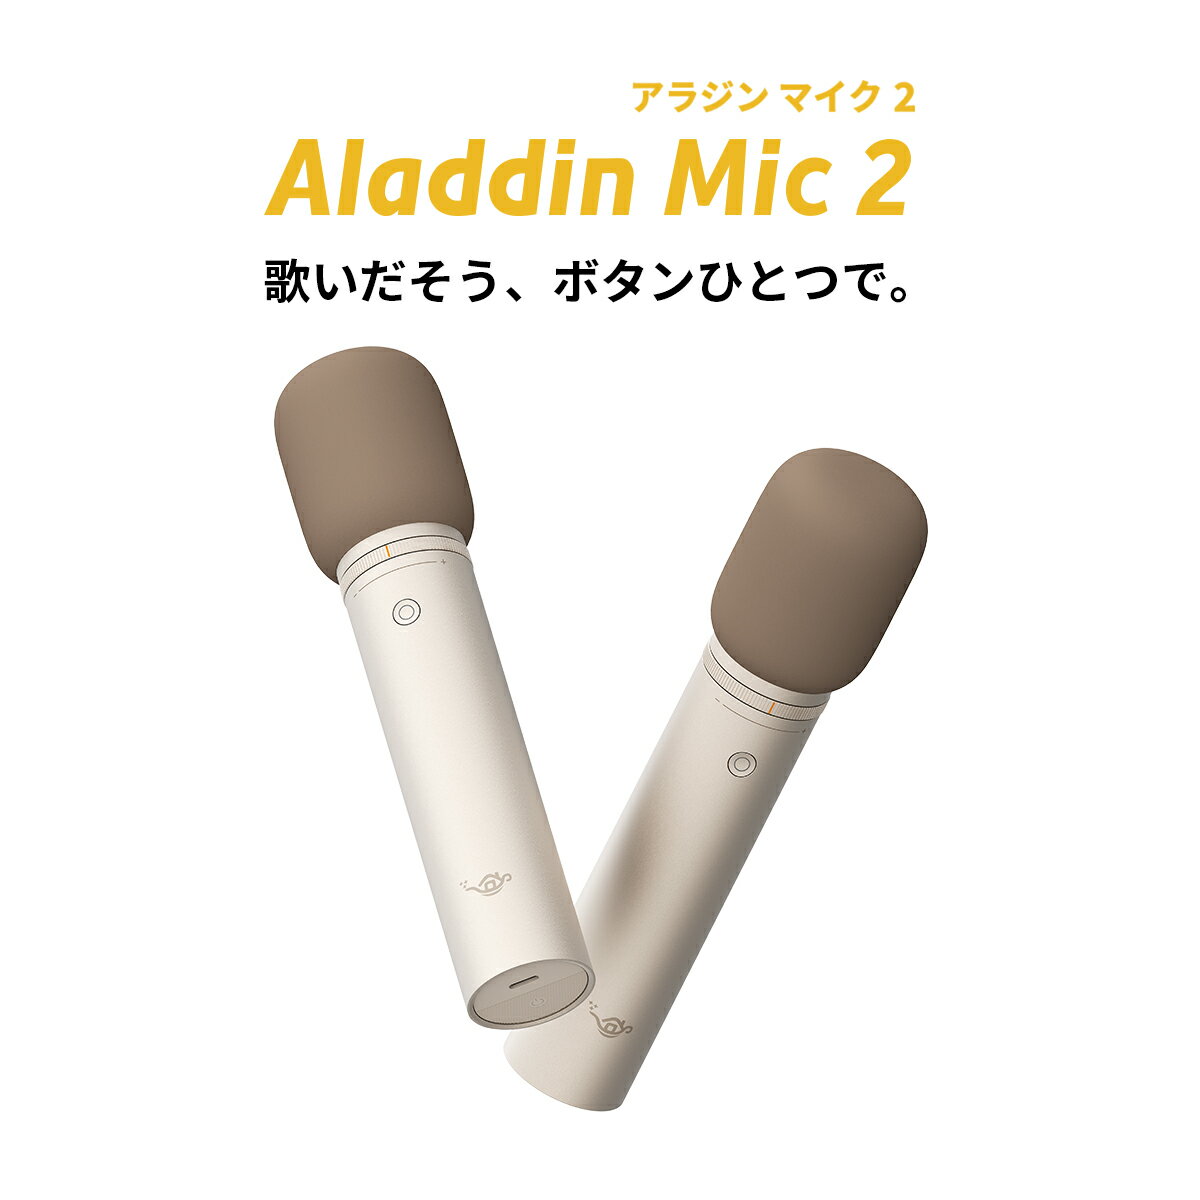 Aladdin Mic2（アラジン マイク）カラオケ アラジンマイク 2 マイクセット 家庭用 カラオケマイク ダイナミックマイク USB 高音質 ワイヤレスマイク